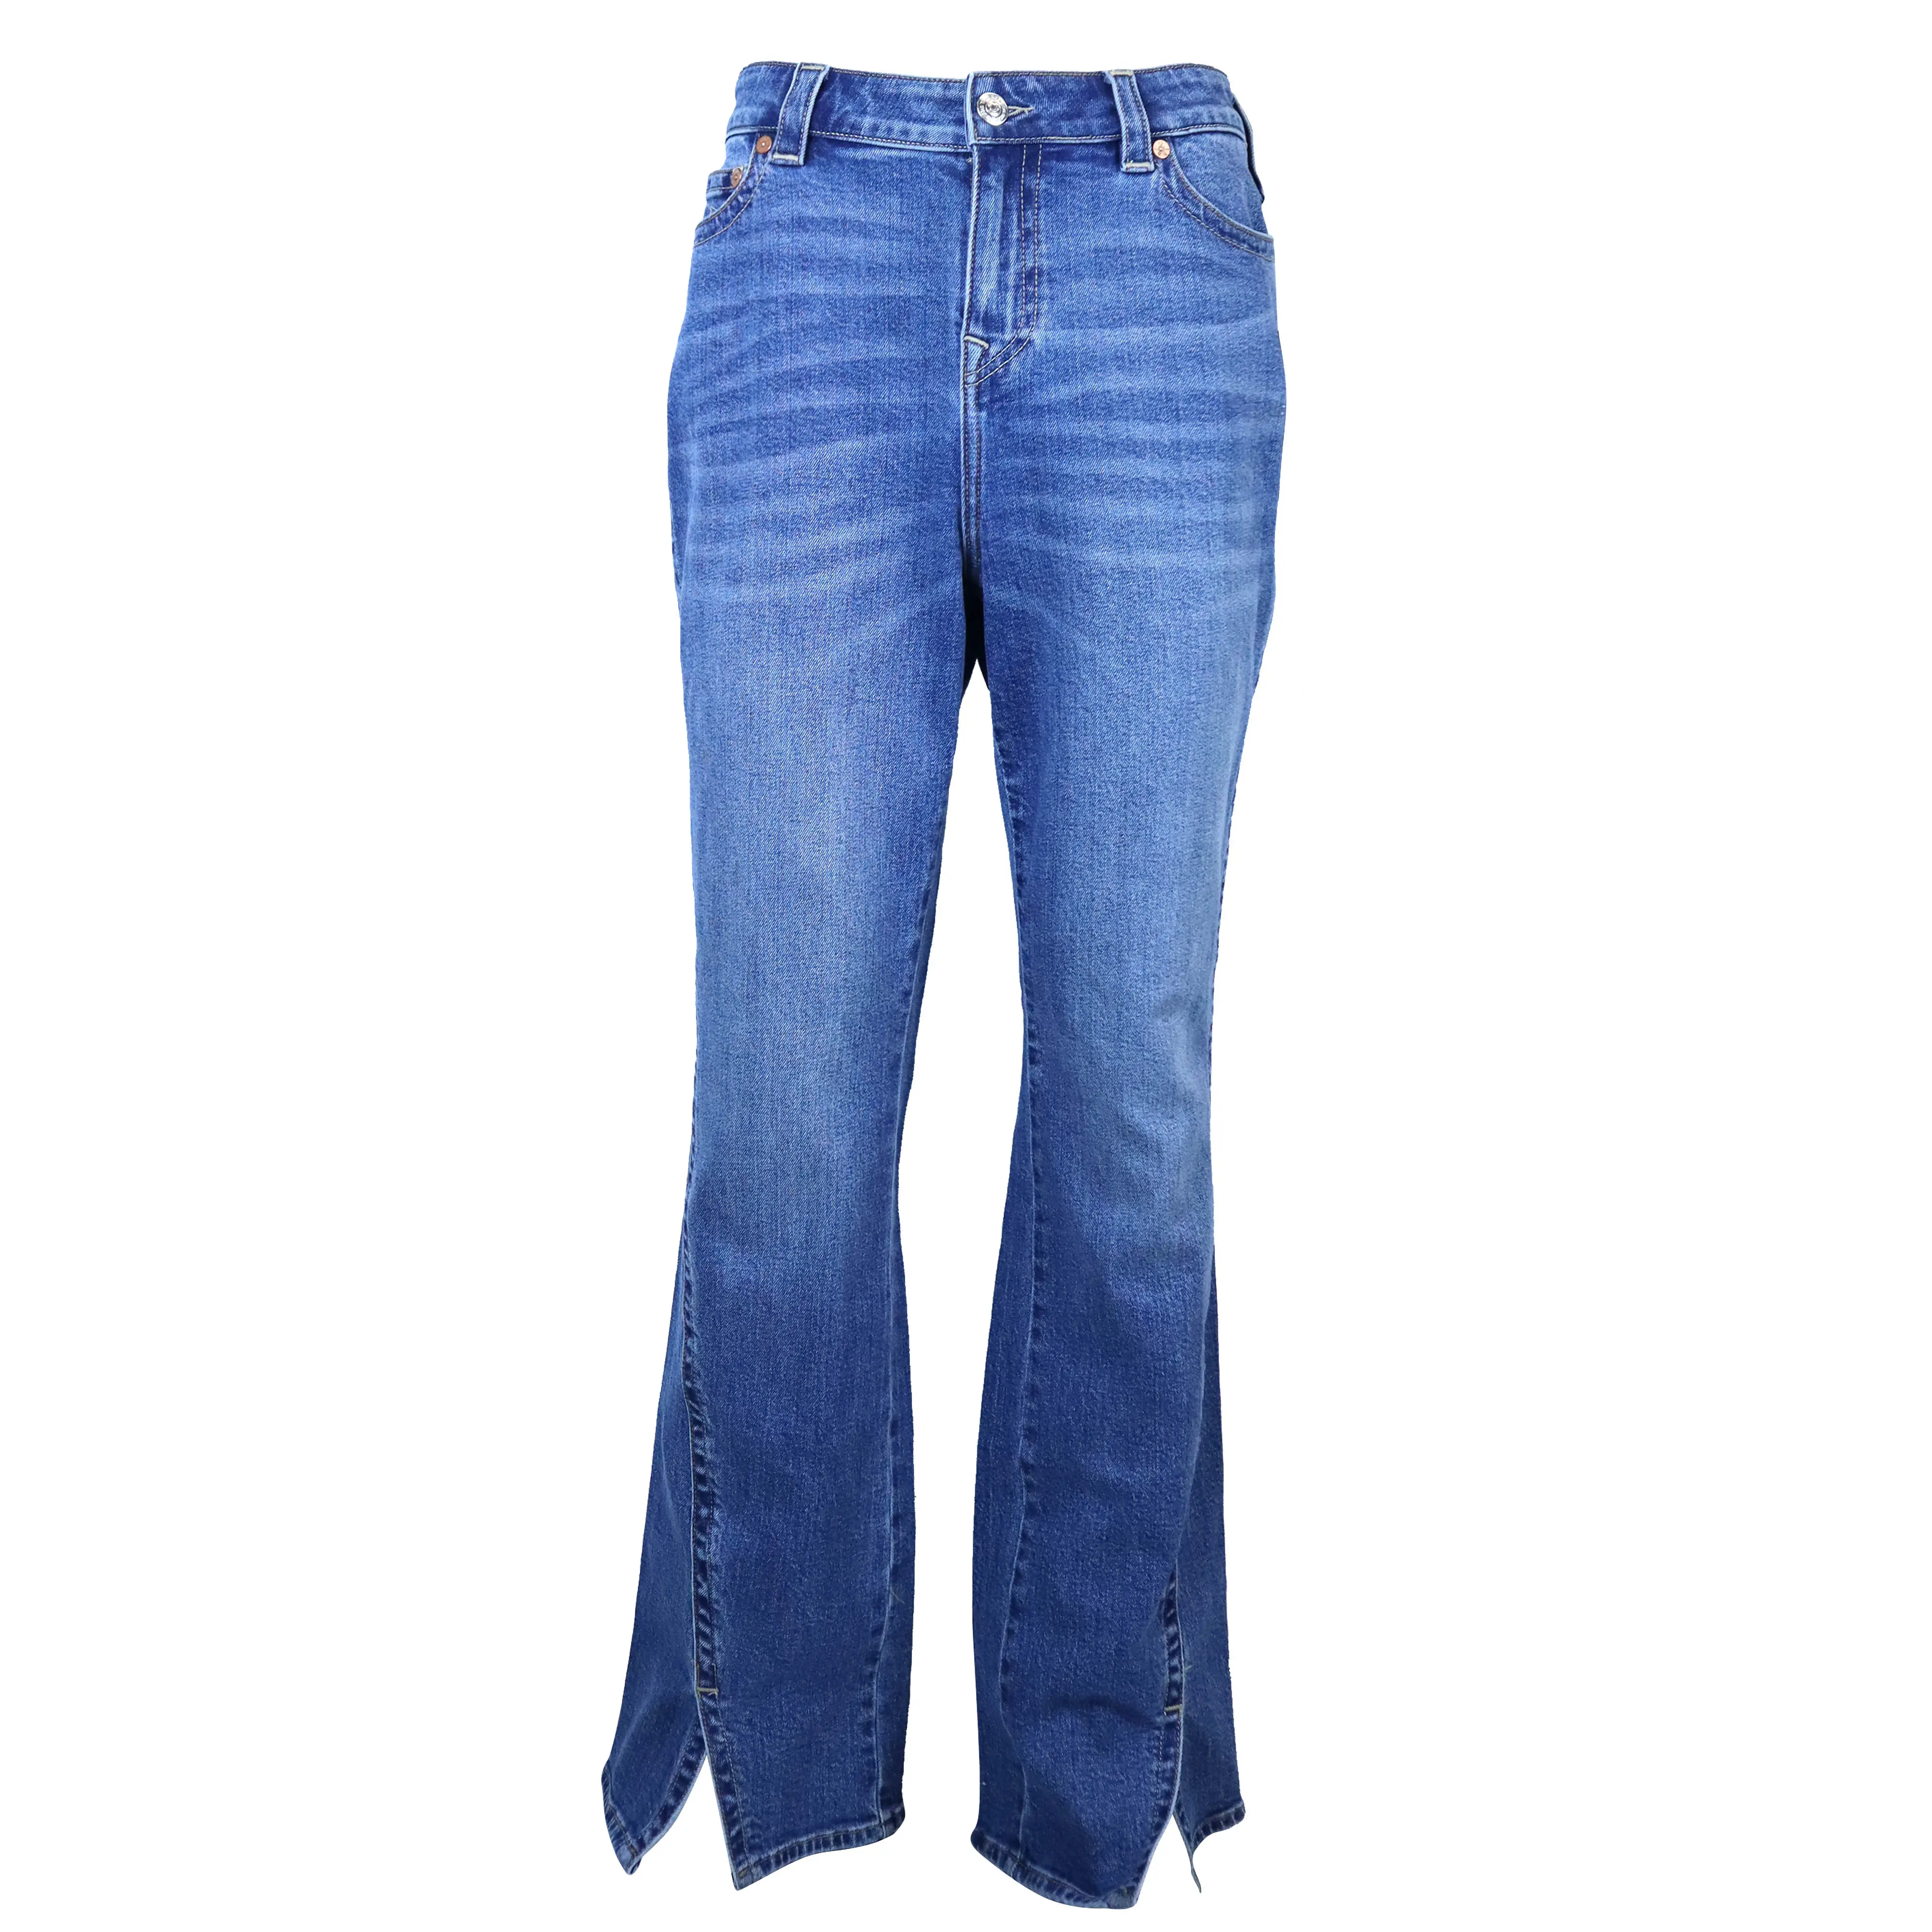 Denim kustom Hip Hop Streetwear desainer longgar bermerek antik dua lapisan Jacquard digunakan Flare Bootcut Jeans pria